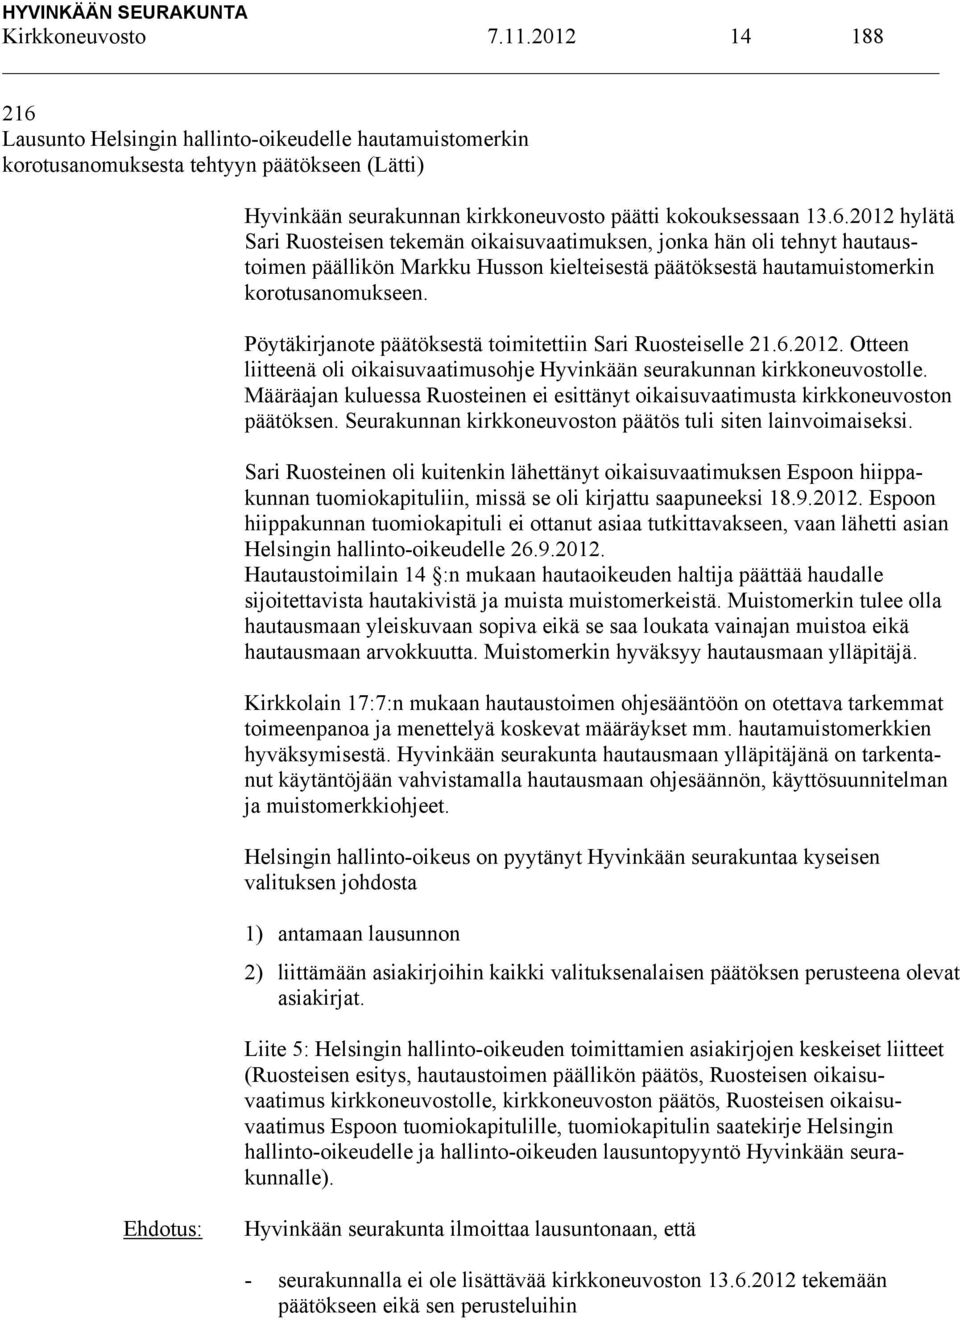 Pöytäkirjanote päätöksestä toimitettiin Sari Ruosteiselle 21.6.2012. Otteen liitteenä oli oikaisuvaatimusohje Hyvinkään seurakunnan kirkkoneuvostolle.